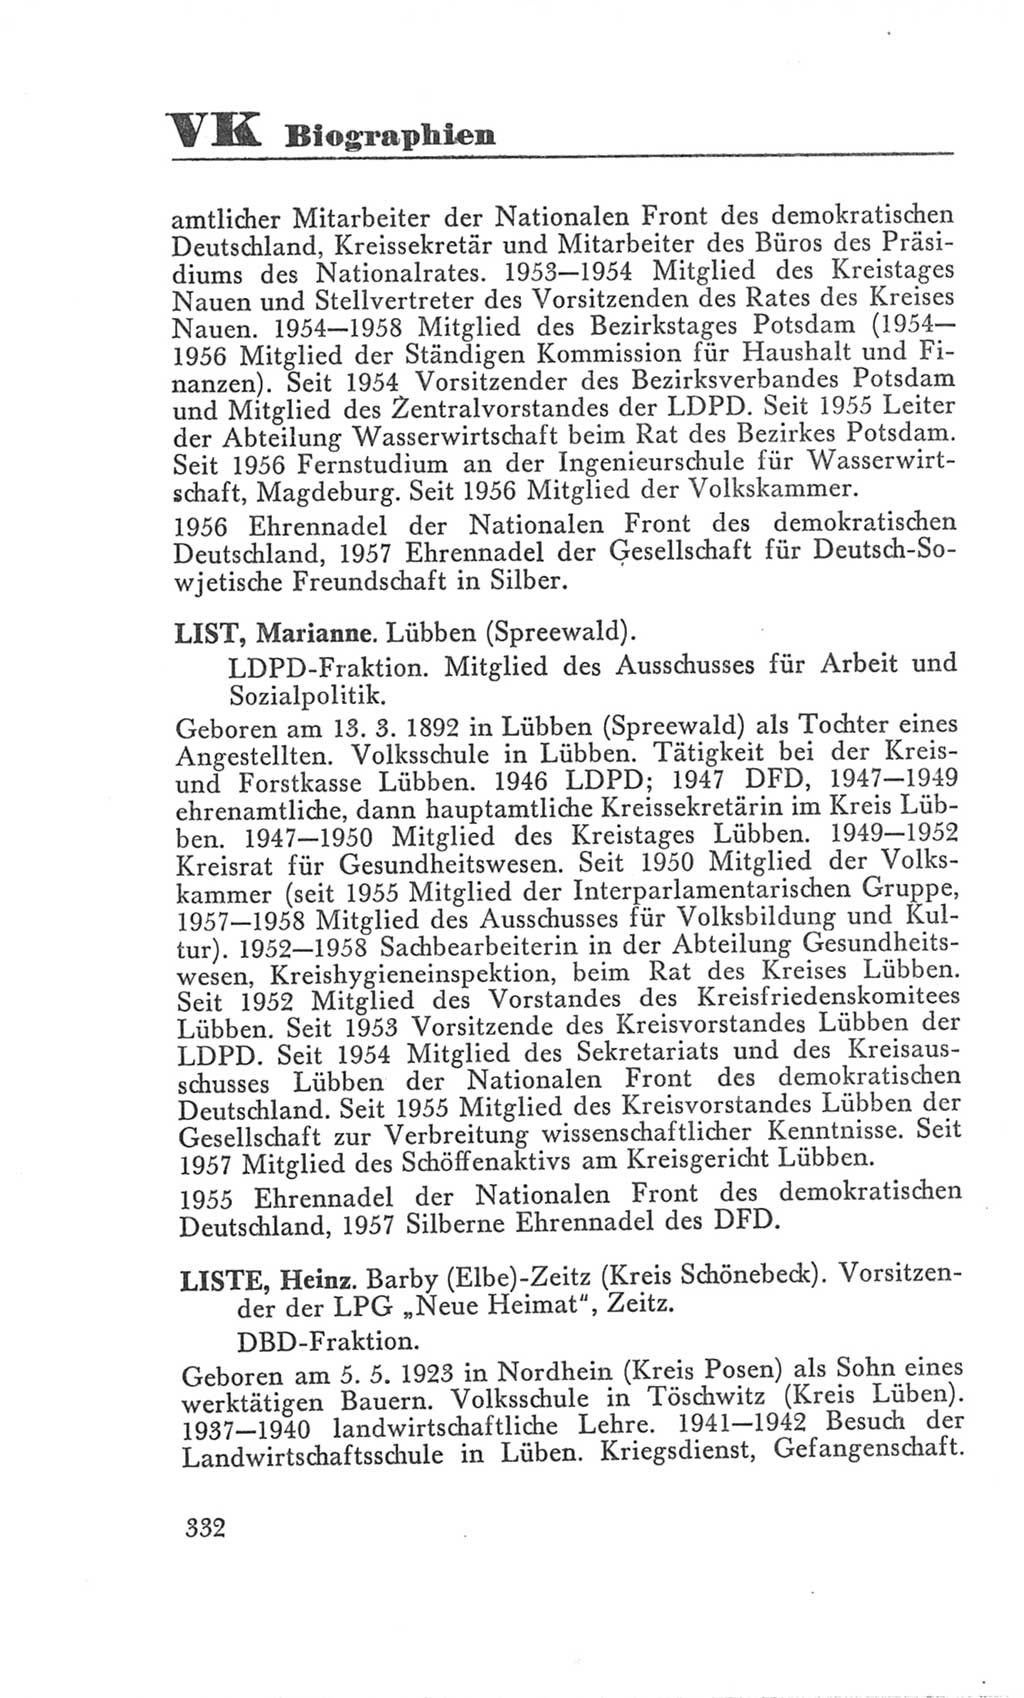 Handbuch der Volkskammer (VK) der Deutschen Demokratischen Republik (DDR), 3. Wahlperiode 1958-1963, Seite 332 (Hdb. VK. DDR 3. WP. 1958-1963, S. 332)